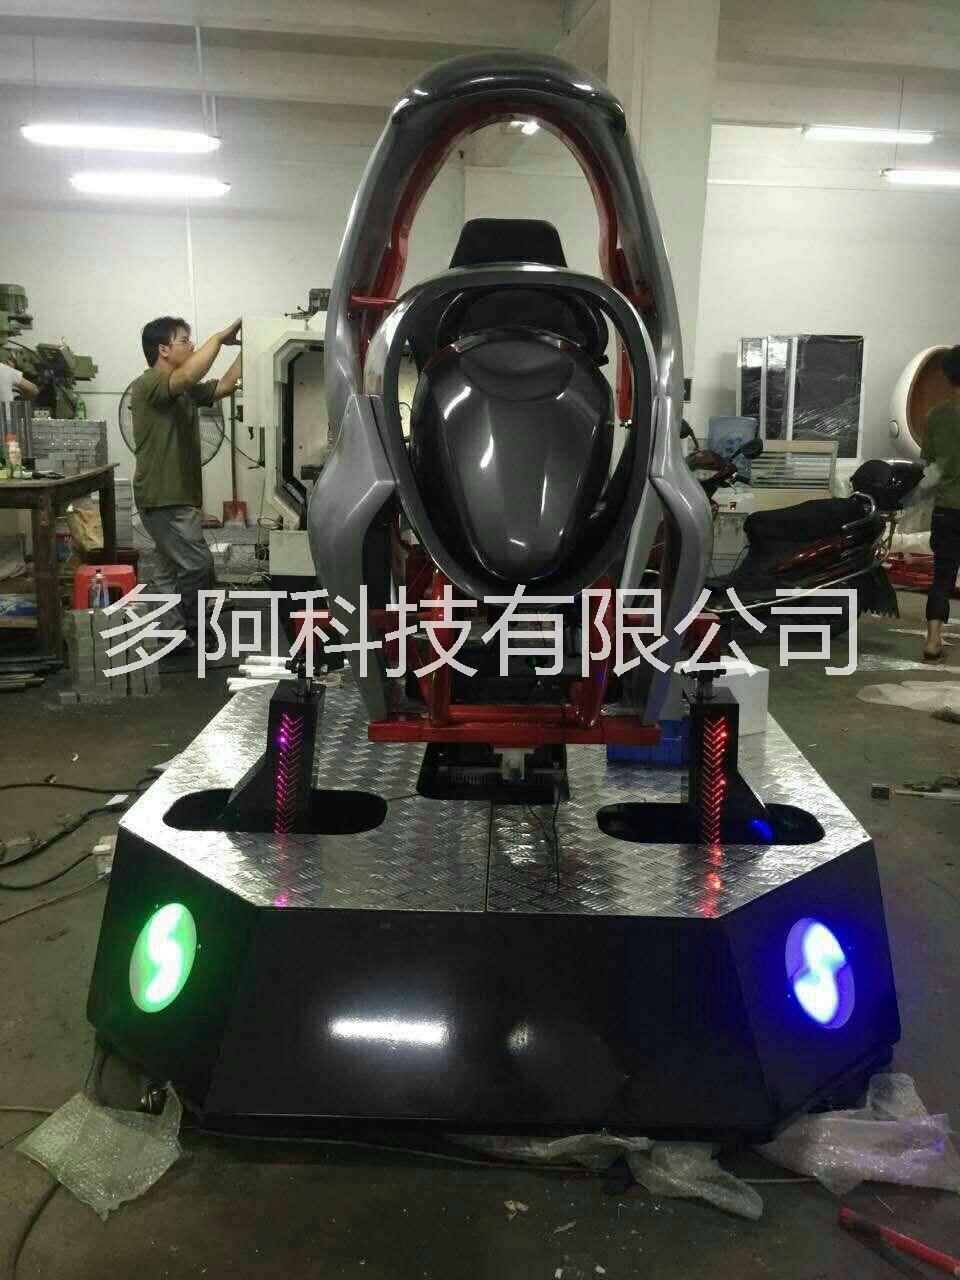 VR9D 动感赛车 虚拟现实技术设备 13316133631